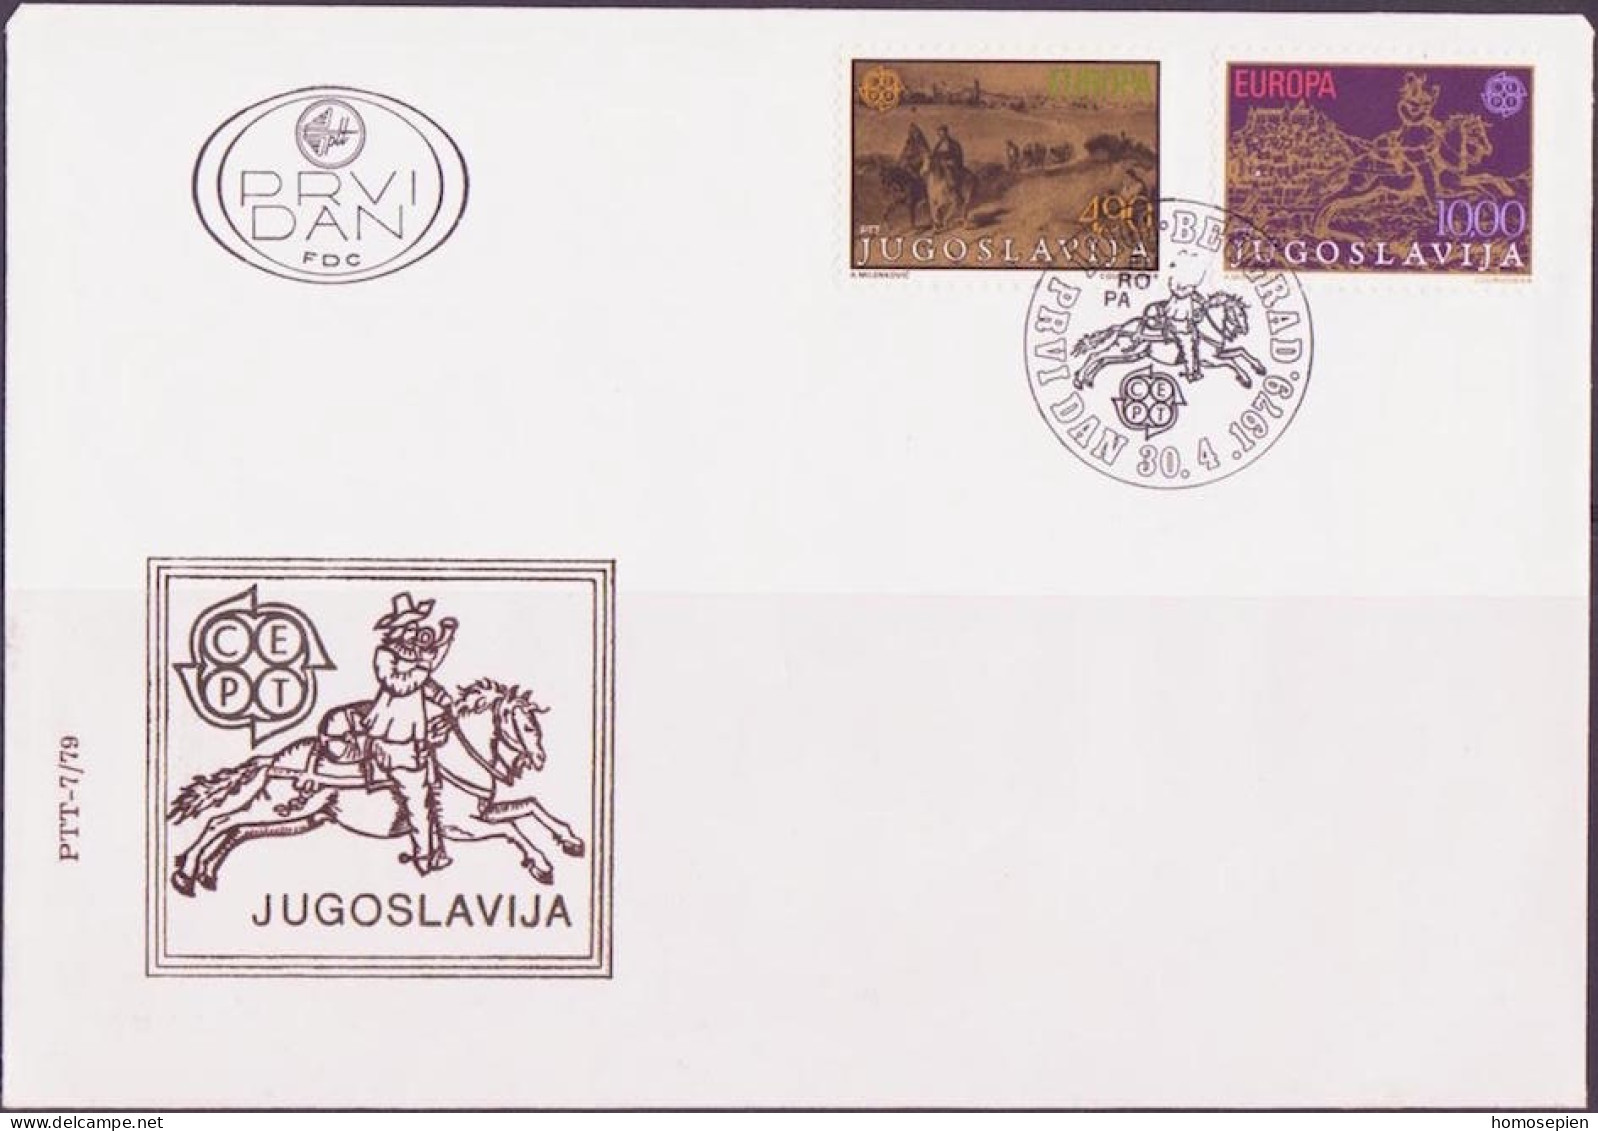 Yougoslavie - Jugoslawien - Yugoslavia FDC2 1979 Y&T N°1663 à 1664 - Michel N°1787 à 1788 - EUROPA - FDC